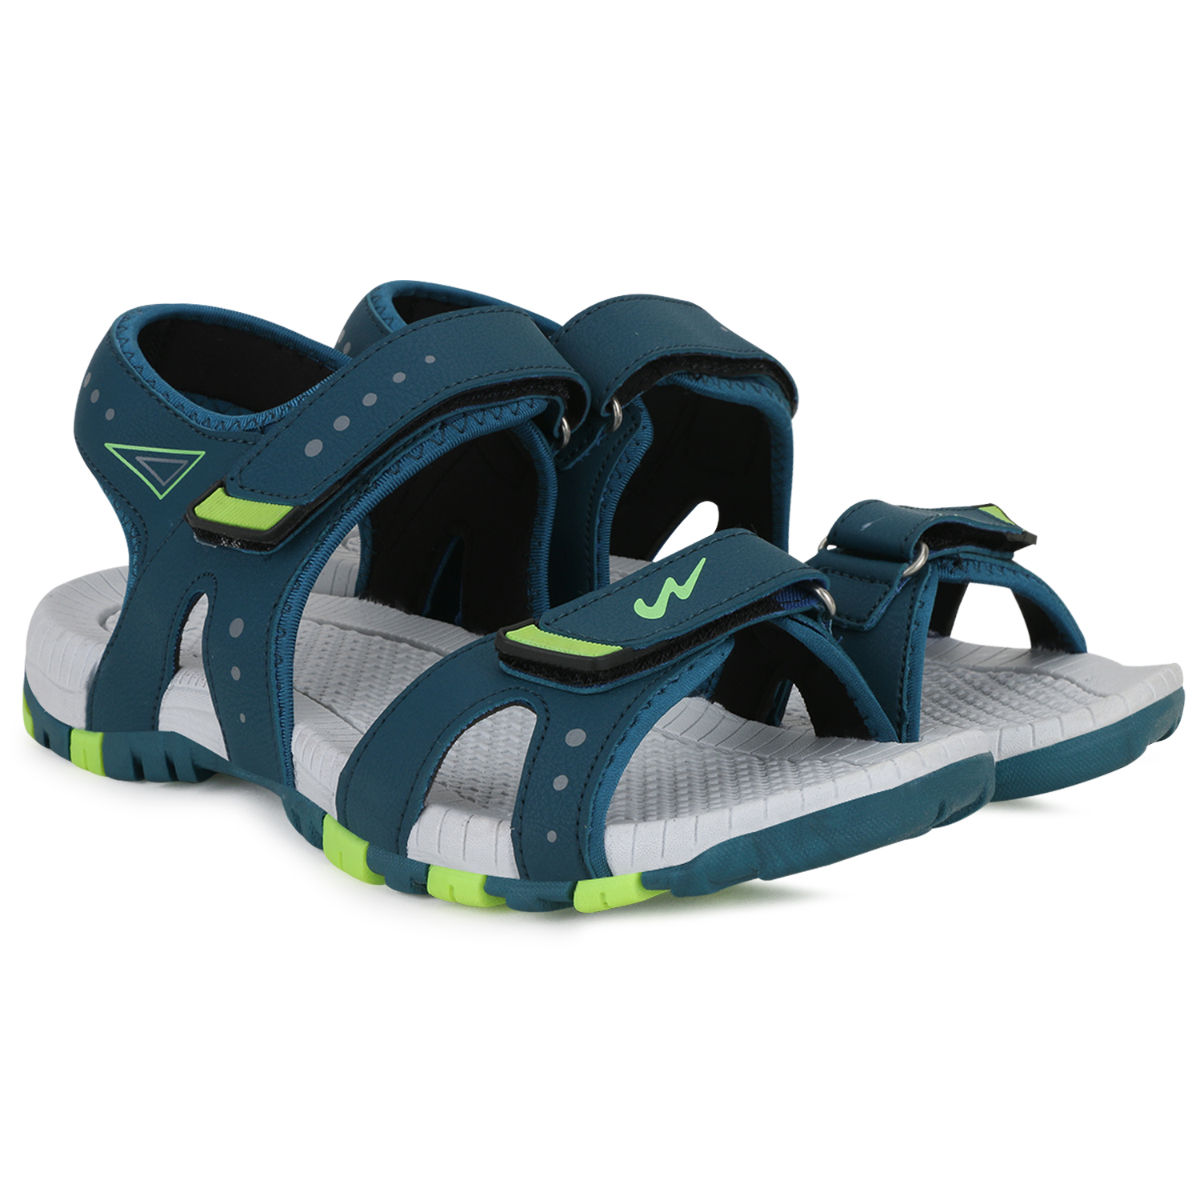 Teva Men's Pajaro Water-Resistant Sandals - Macy's | Sandals, Mens slippers,  Mens sandals